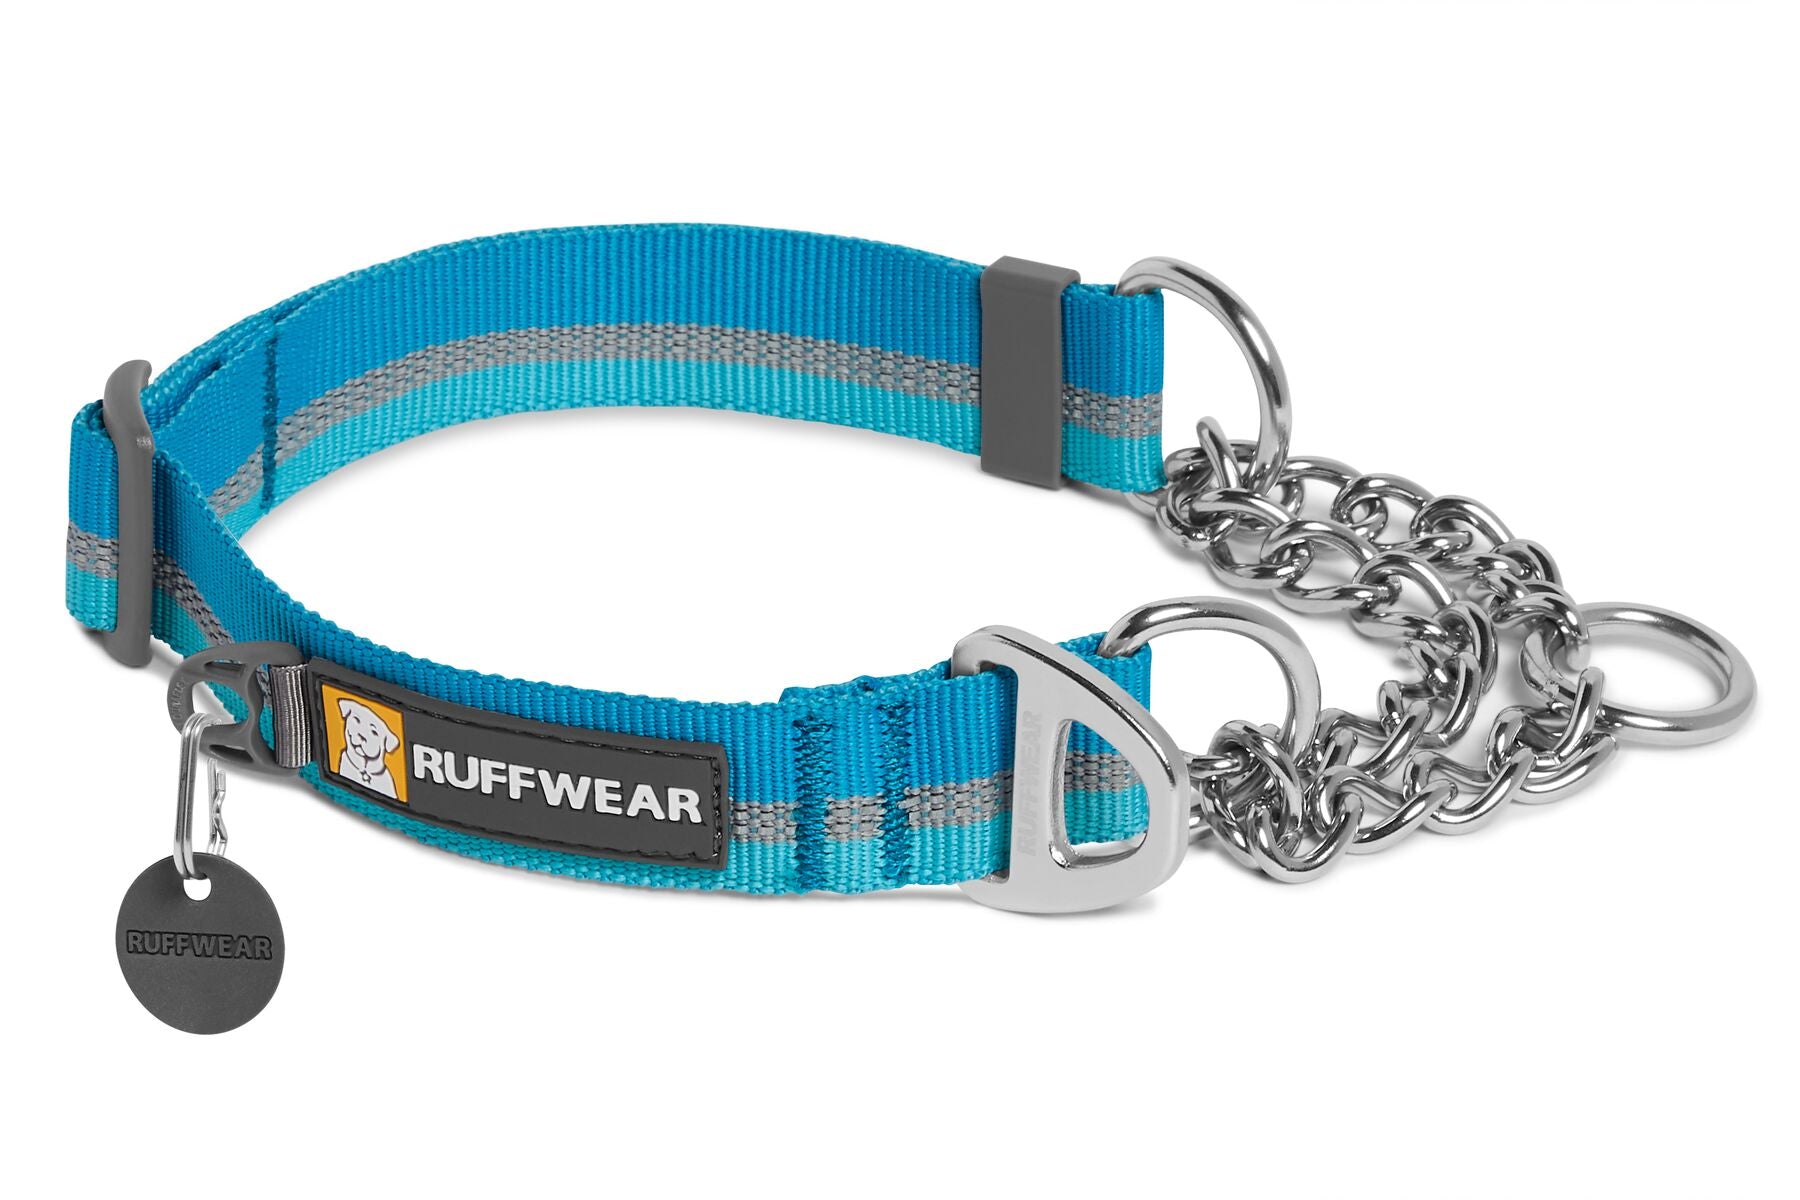 Ruffwear: Chain Reaction Dog Collar